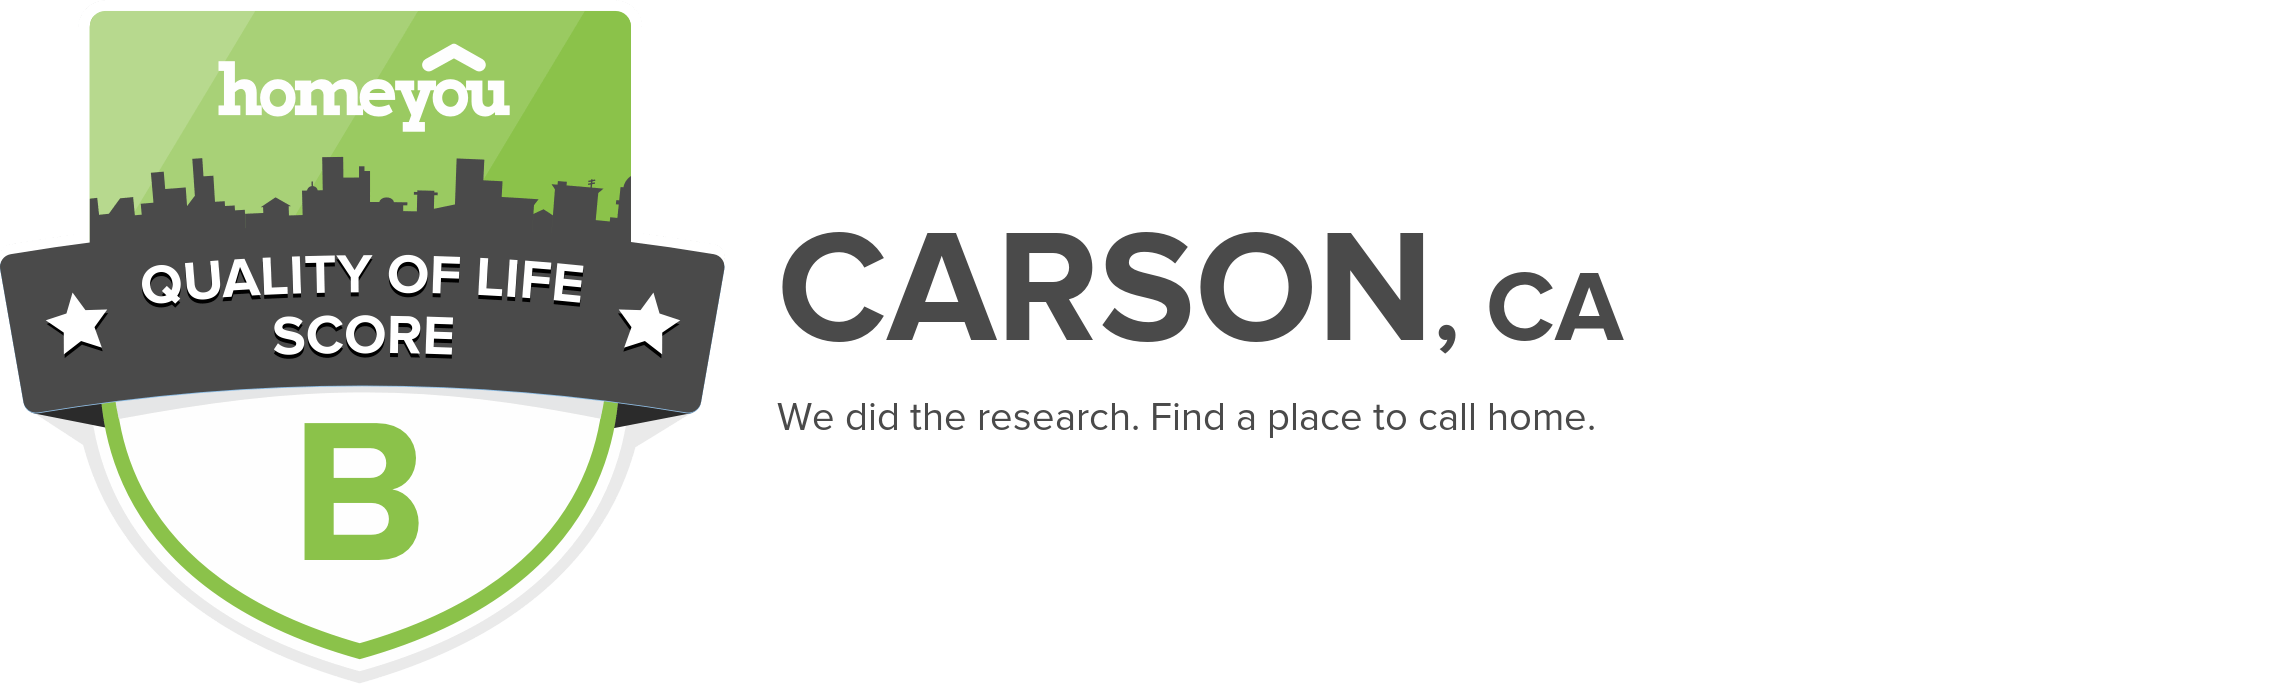 Carson, CA